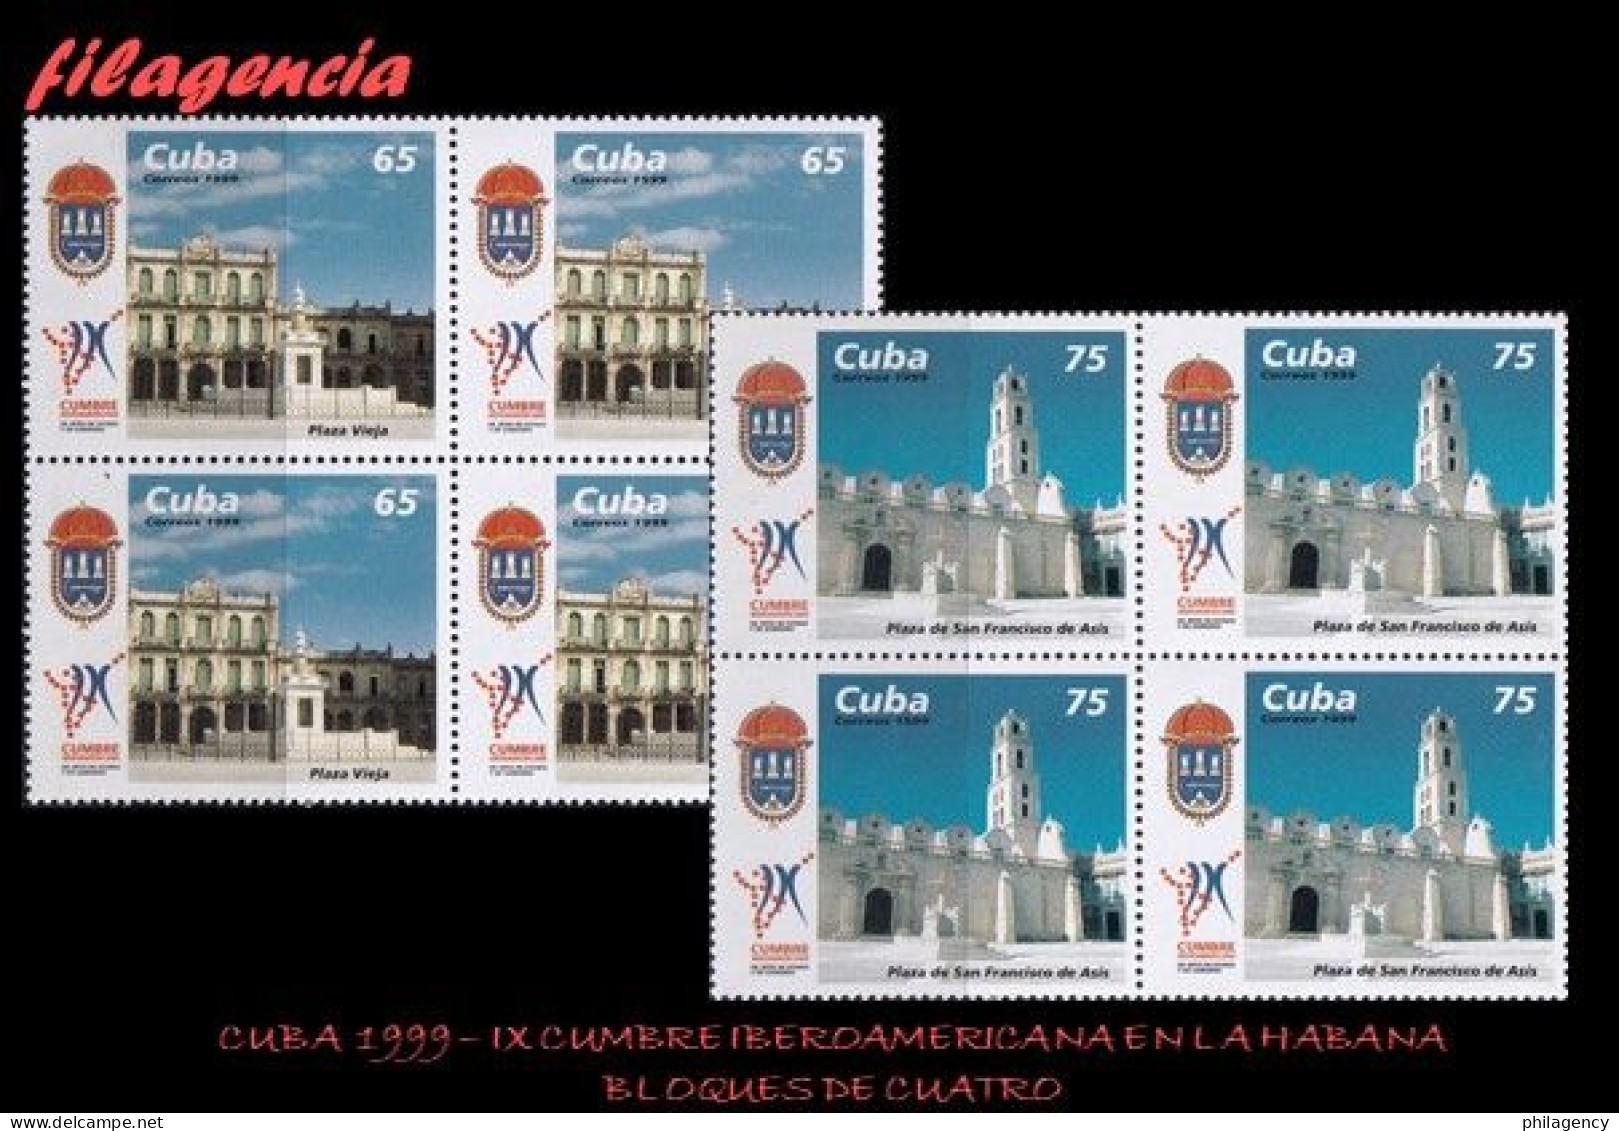 CUBA. BLOQUES DE CUATRO. 1999-27 IX CUMBRE IBEROAMERICANA DE JEFES DE ESTADO EN LA HABANA - Neufs